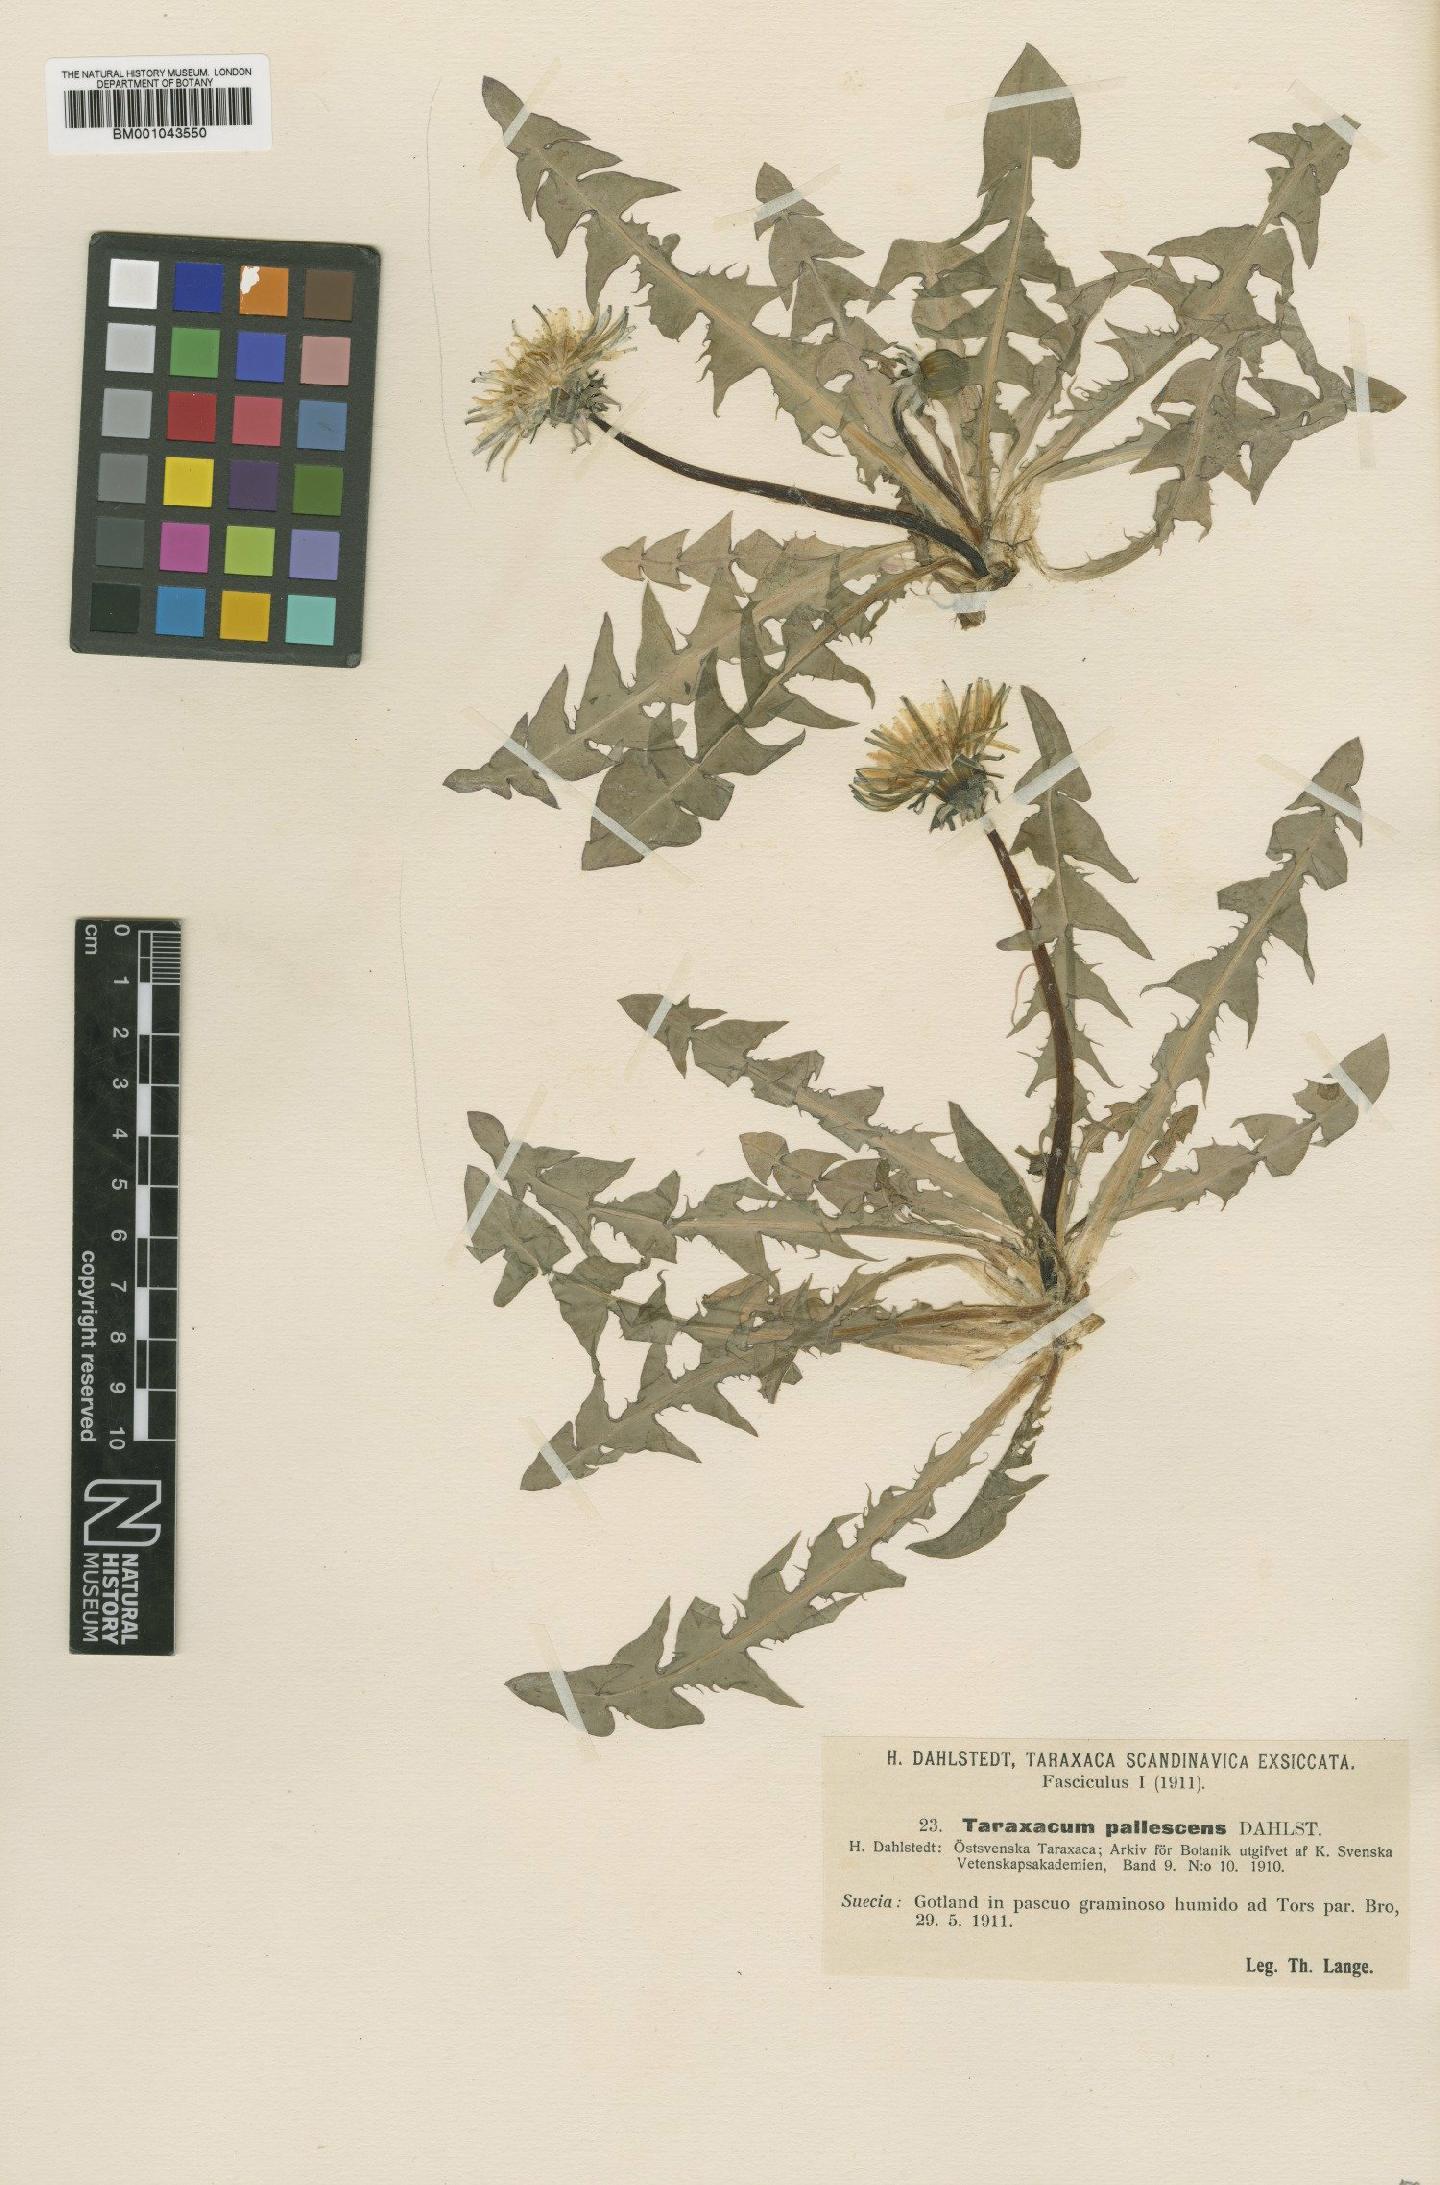 To NHMUK collection (Taraxacum pallescens Dahlst; Type; NHMUK:ecatalogue:2200896)